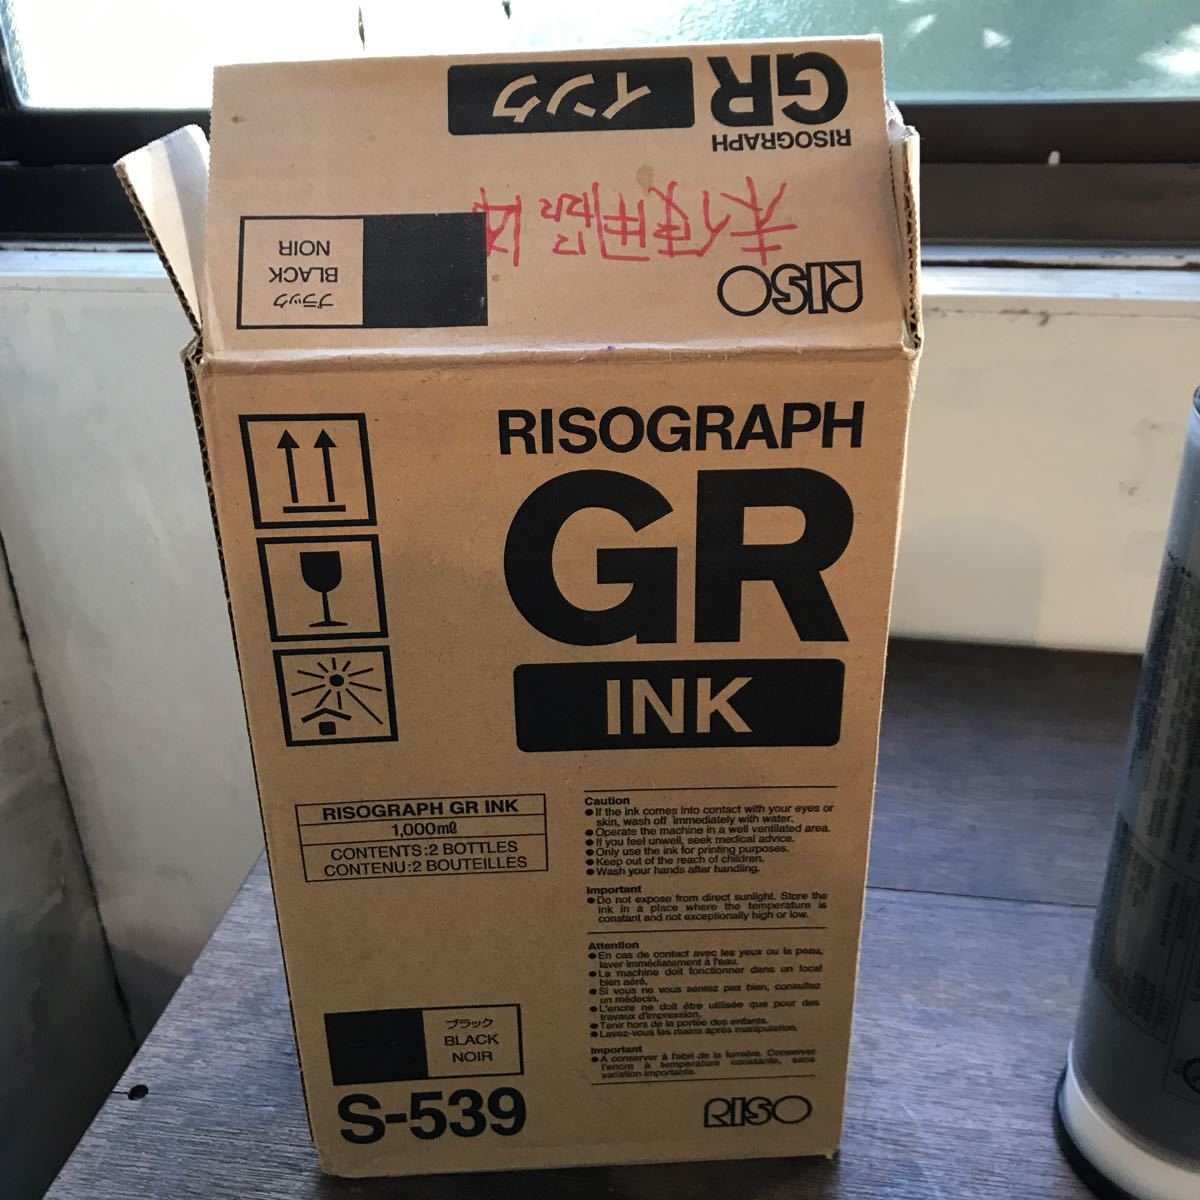 インク S-539 ブラック BLACK NOIR 1000ml 1本 黒 印刷機汎用インク リソー RISO 理想科学工業 対応_画像4